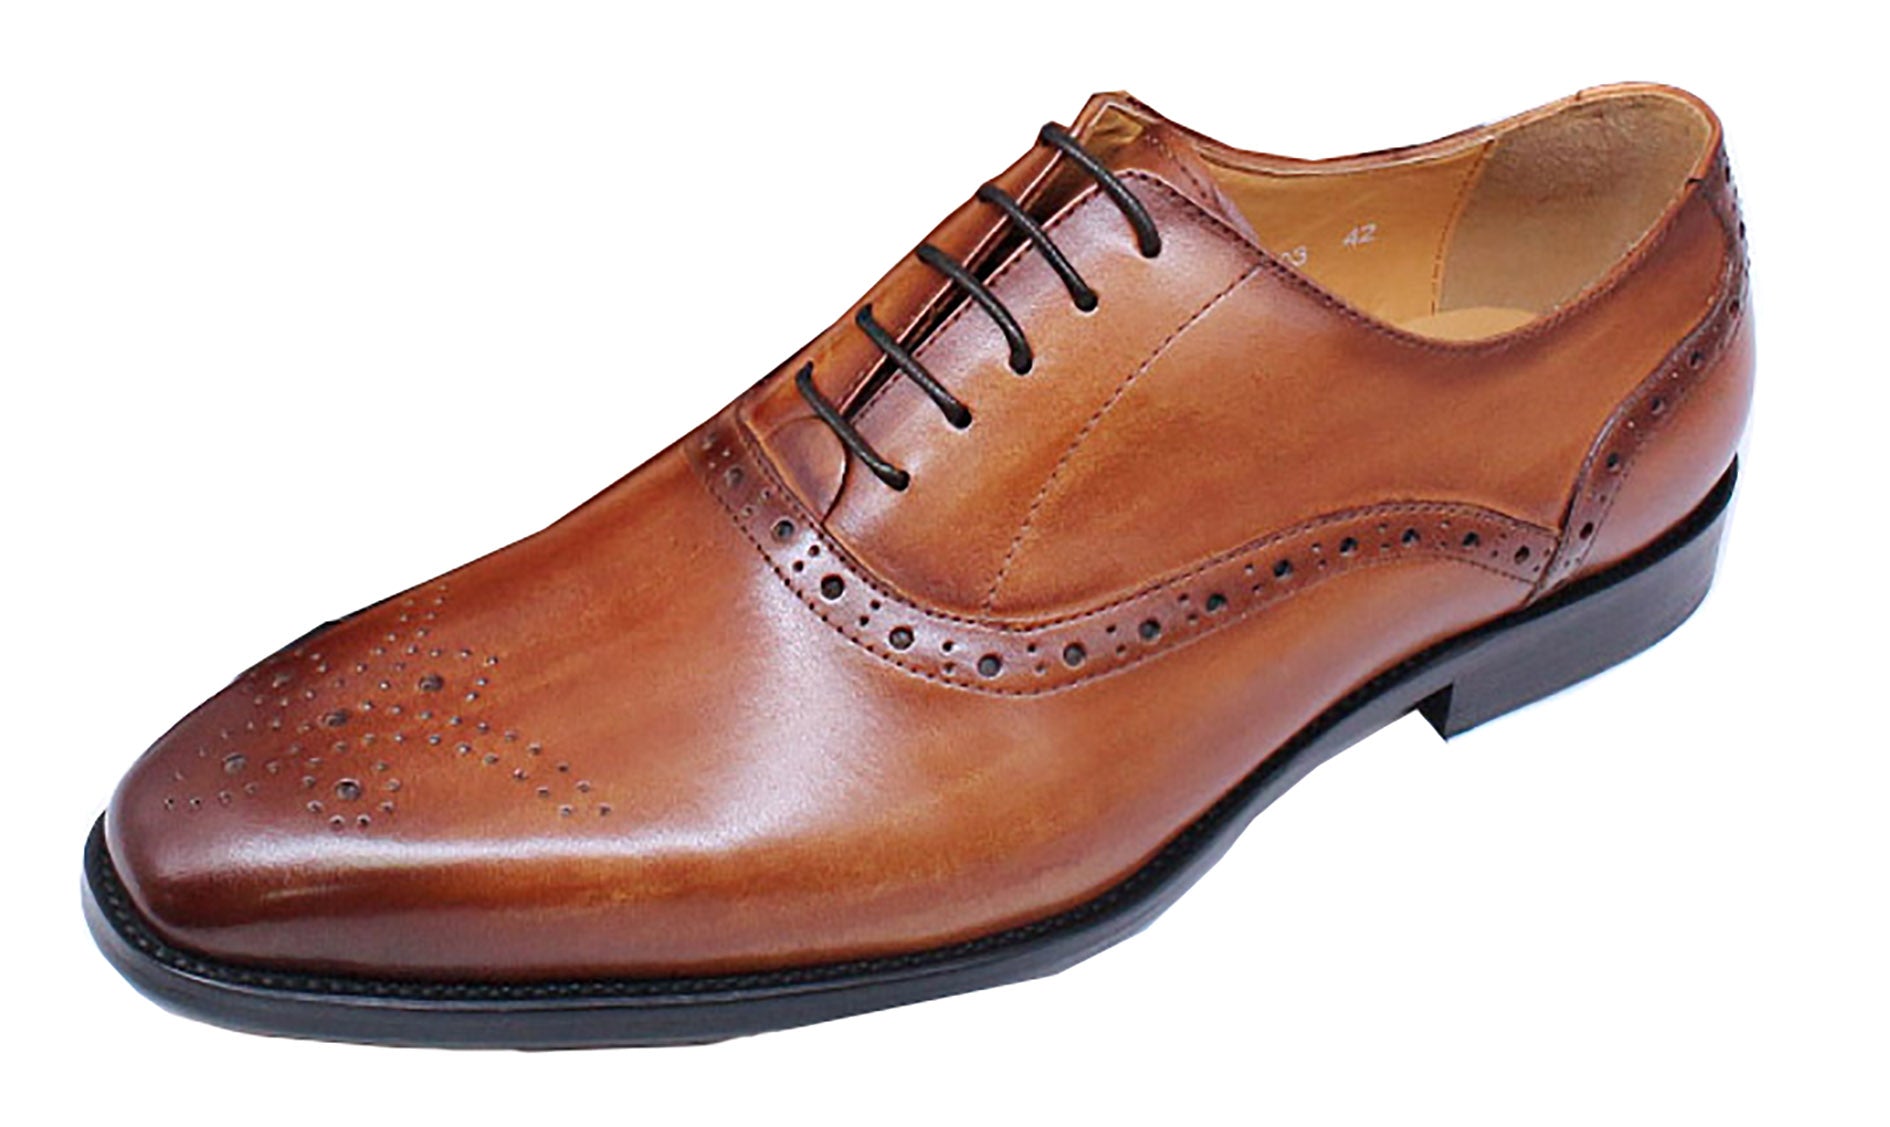 Men's Handmade Formal Plain Toe Brouges Oxfords